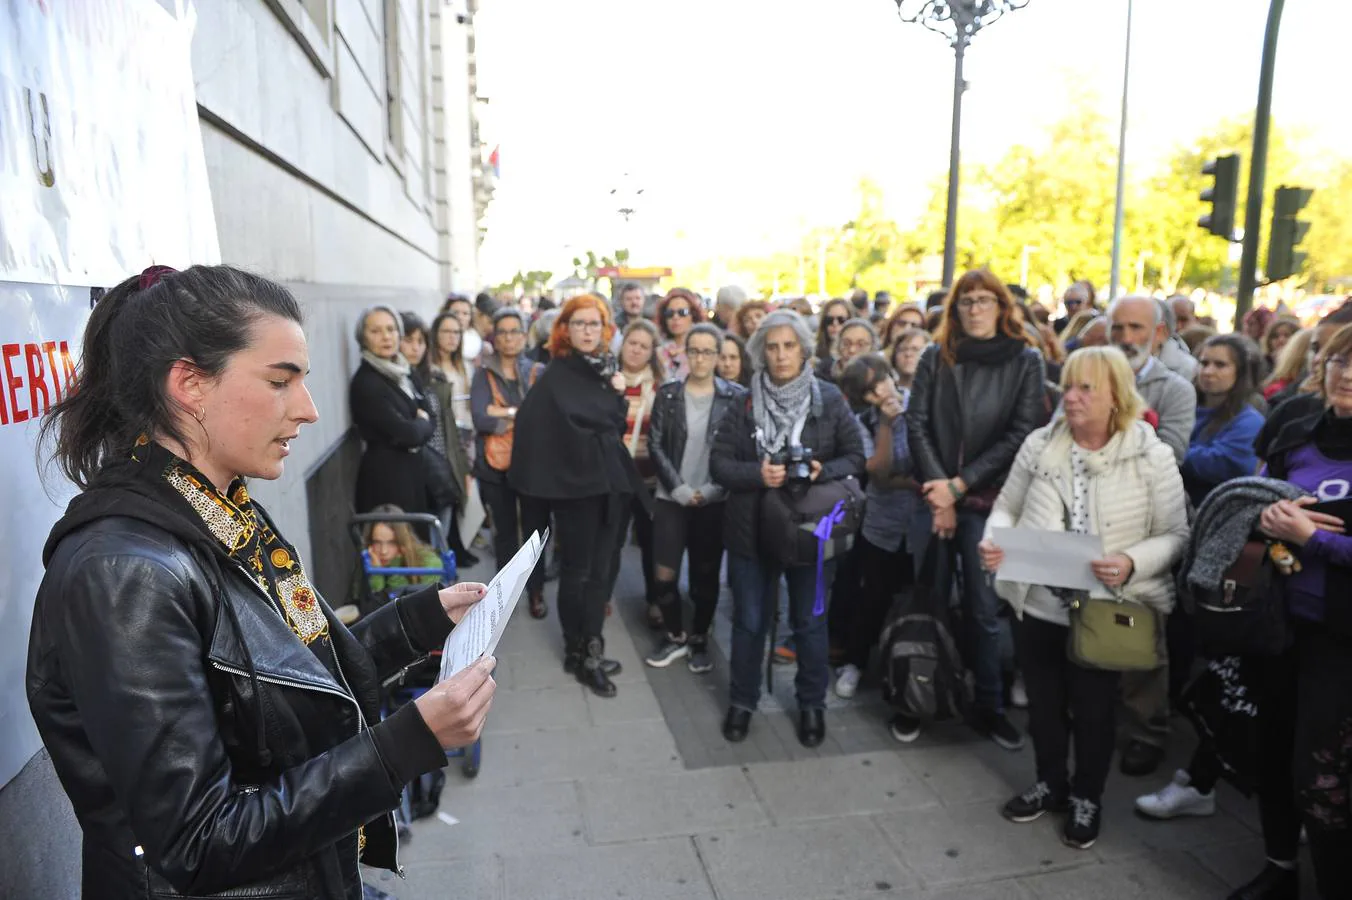 Fotos: Decenas de personas reclaman en Santander que se cumpla el presupuesto contra la violencia de género